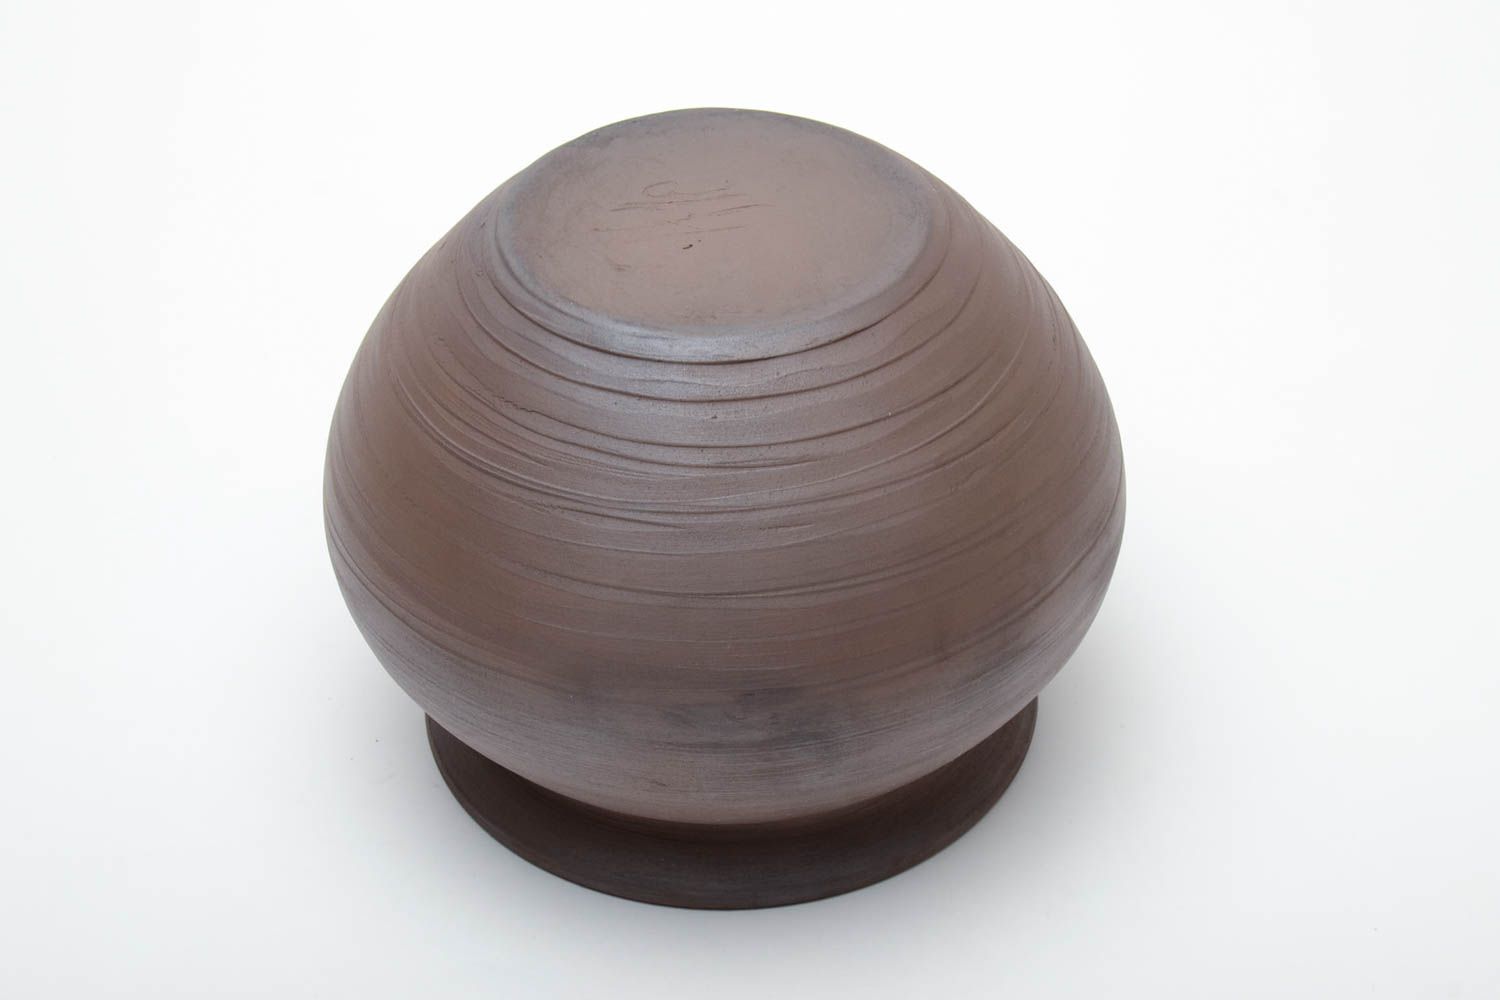 Handmade ceramic pot for baking photo 4